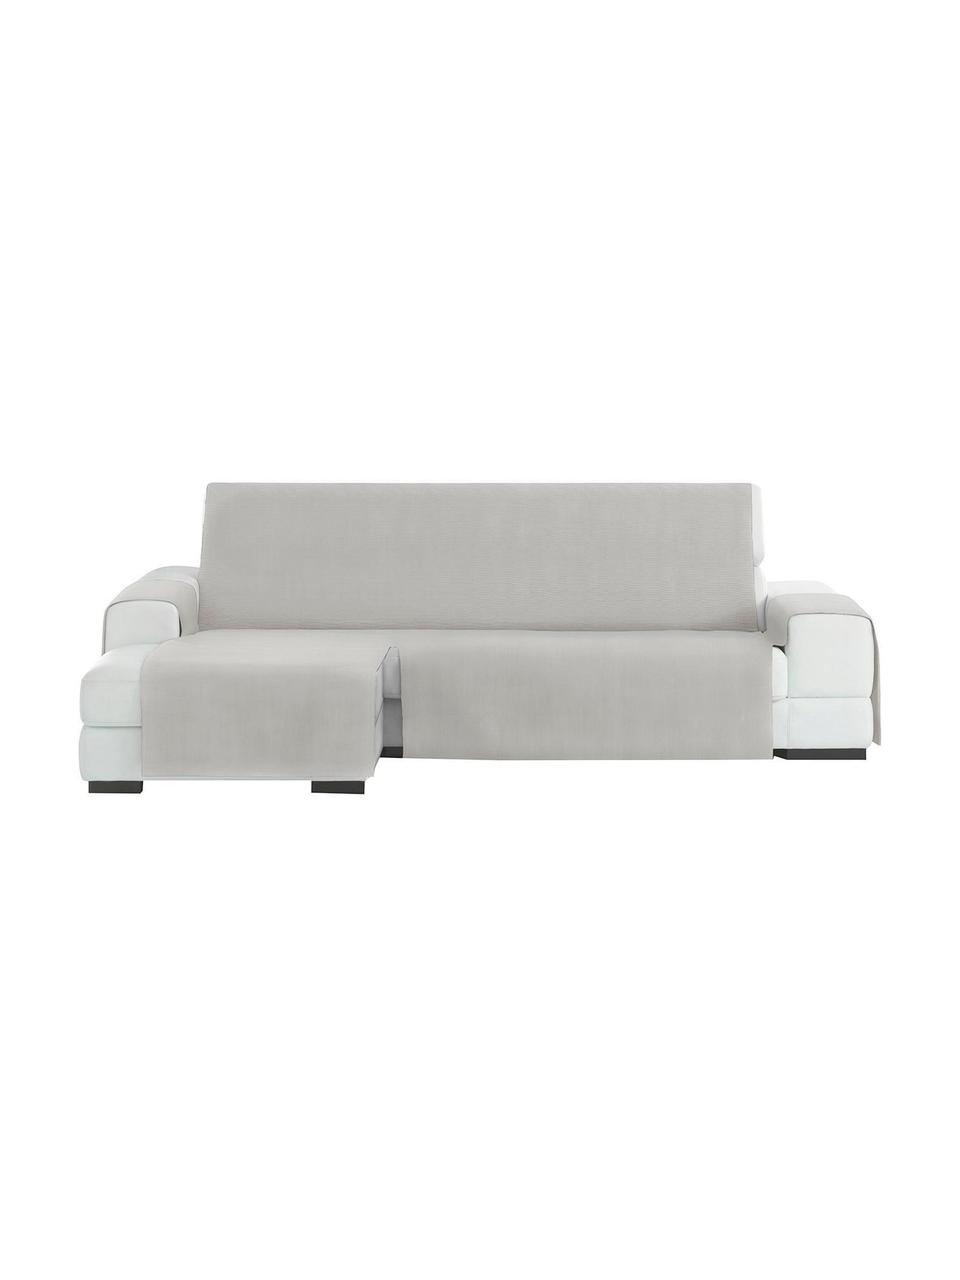 Narzuta na sofę narożną Levante, 65% bawełna, 35% poliester, Szarozielony, S 150 x D 240 cm, lewostronna